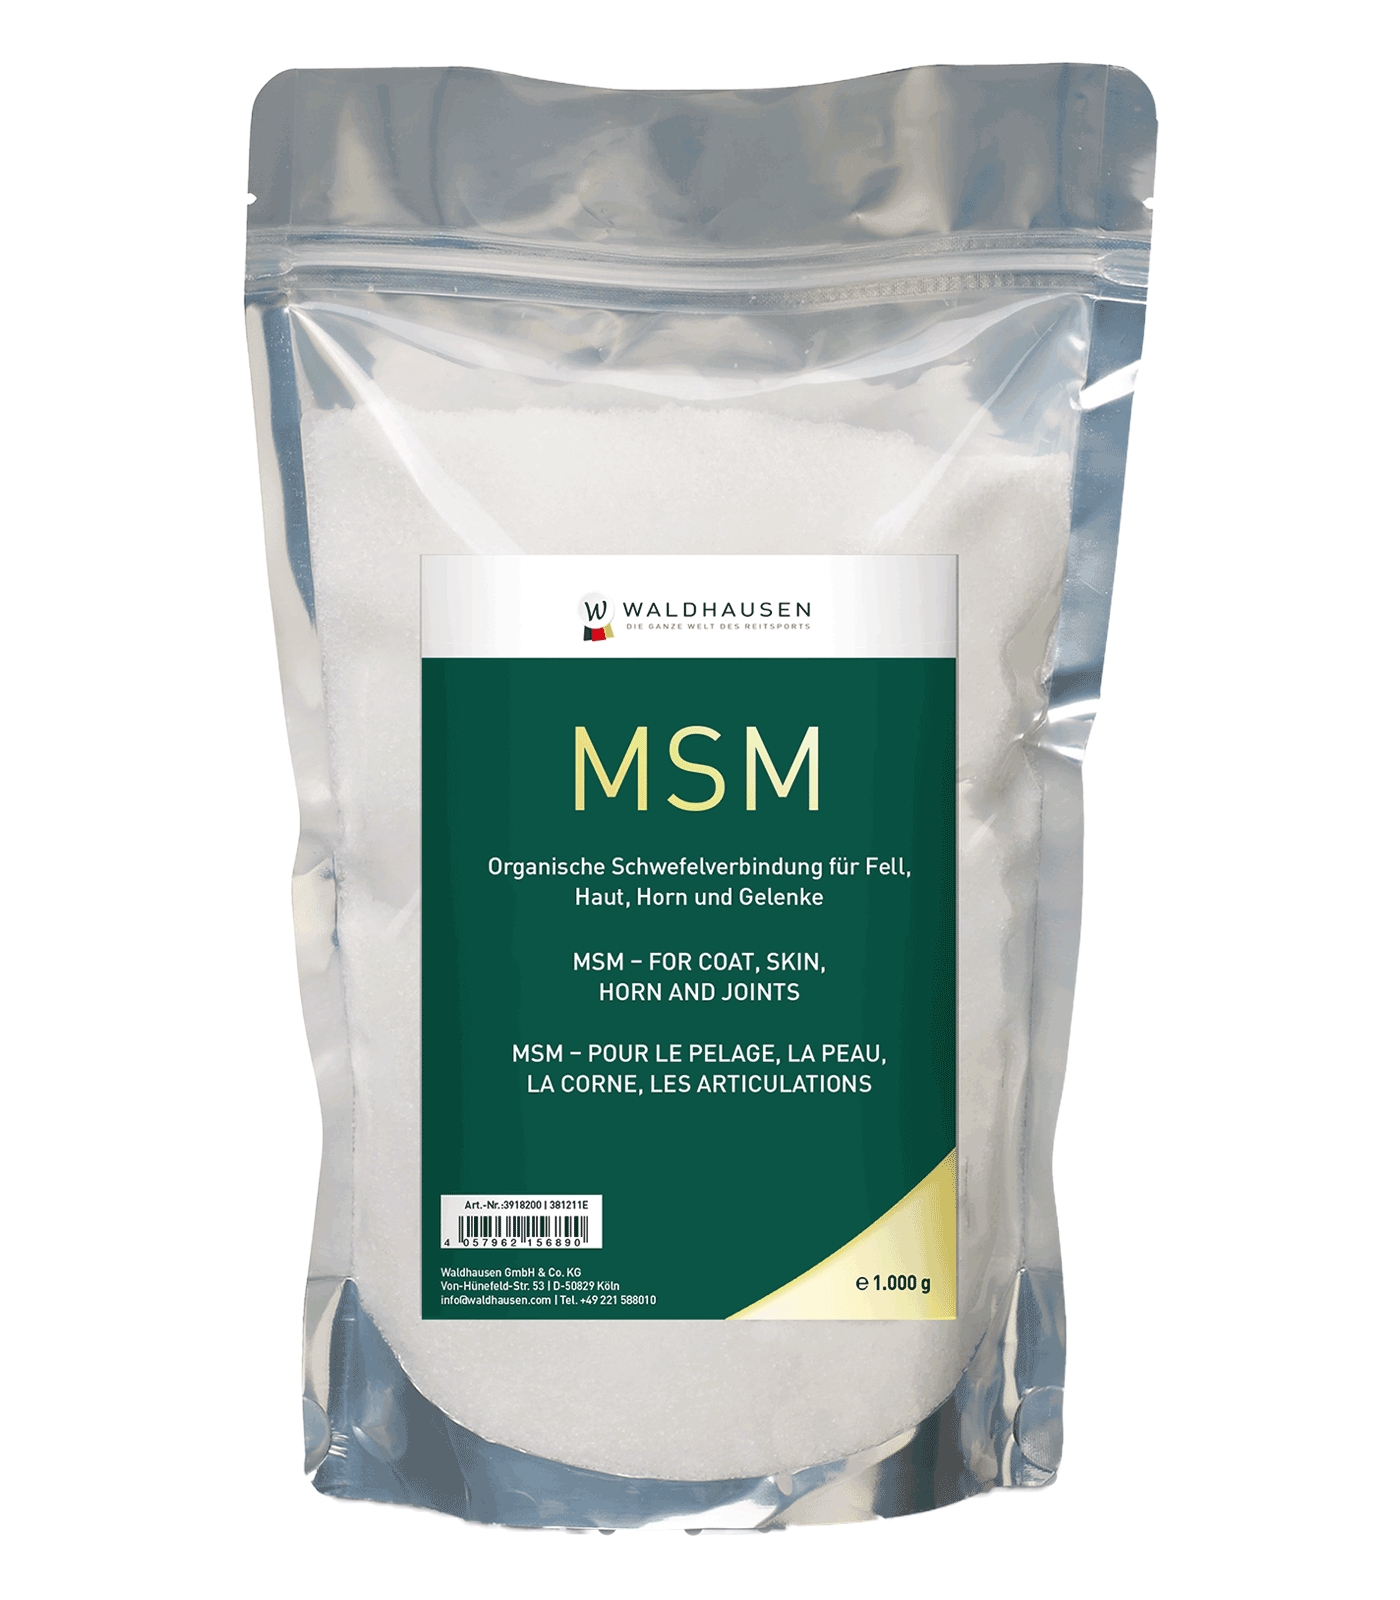 MSM - Für Fell, Gelenke, Haut und Horn